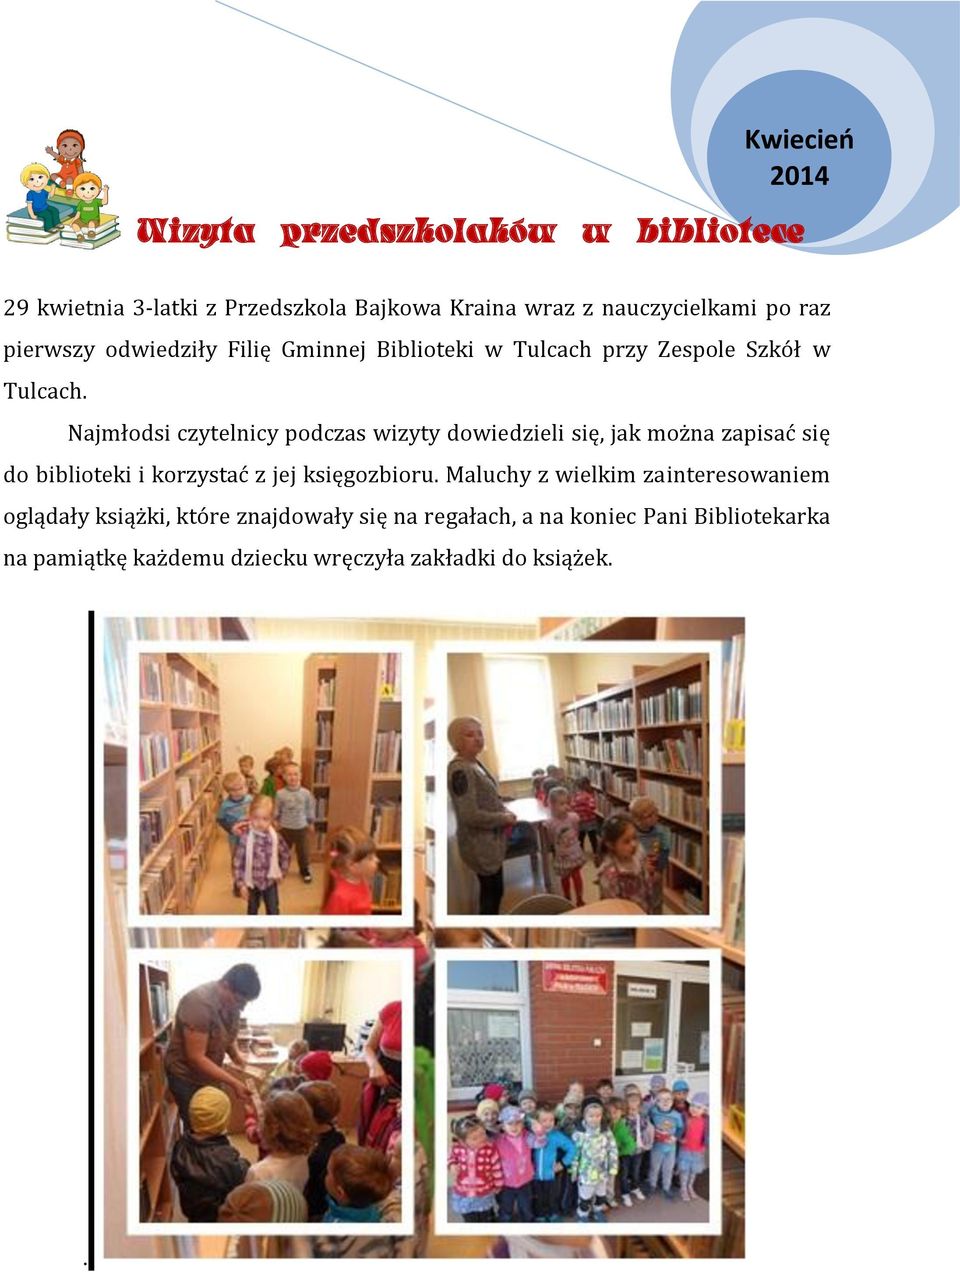 Najmłodsi czytelnicy podczas wizyty dowiedzieli się, jak można zapisać się do biblioteki i korzystać z jej księgozbioru.